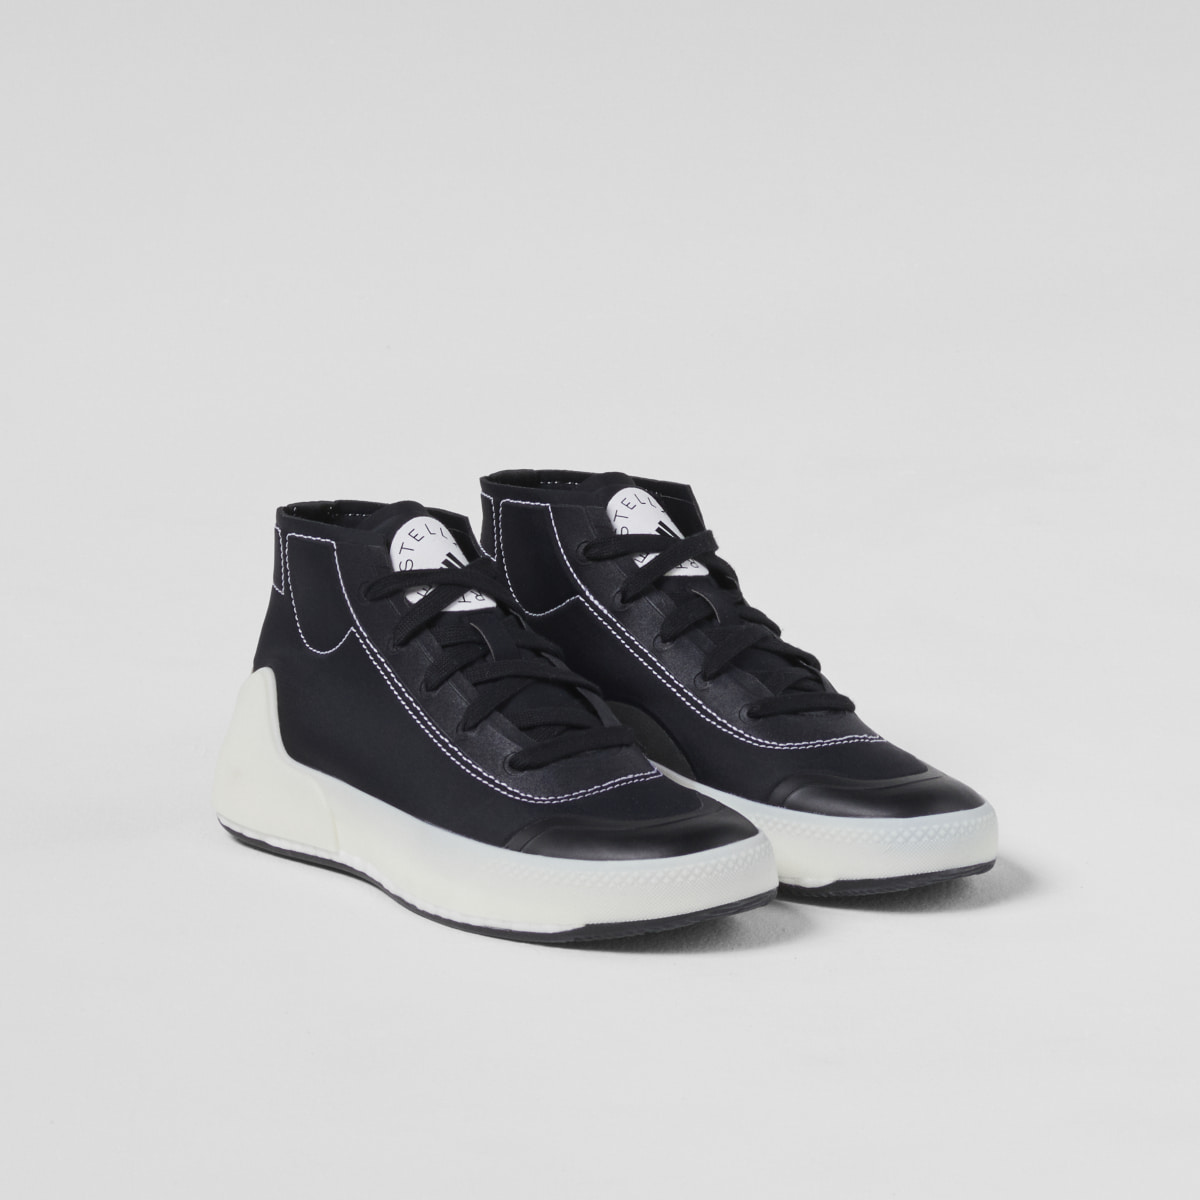 Adidas by Stella McCartney Treino Mid-Cut Shoes. 12